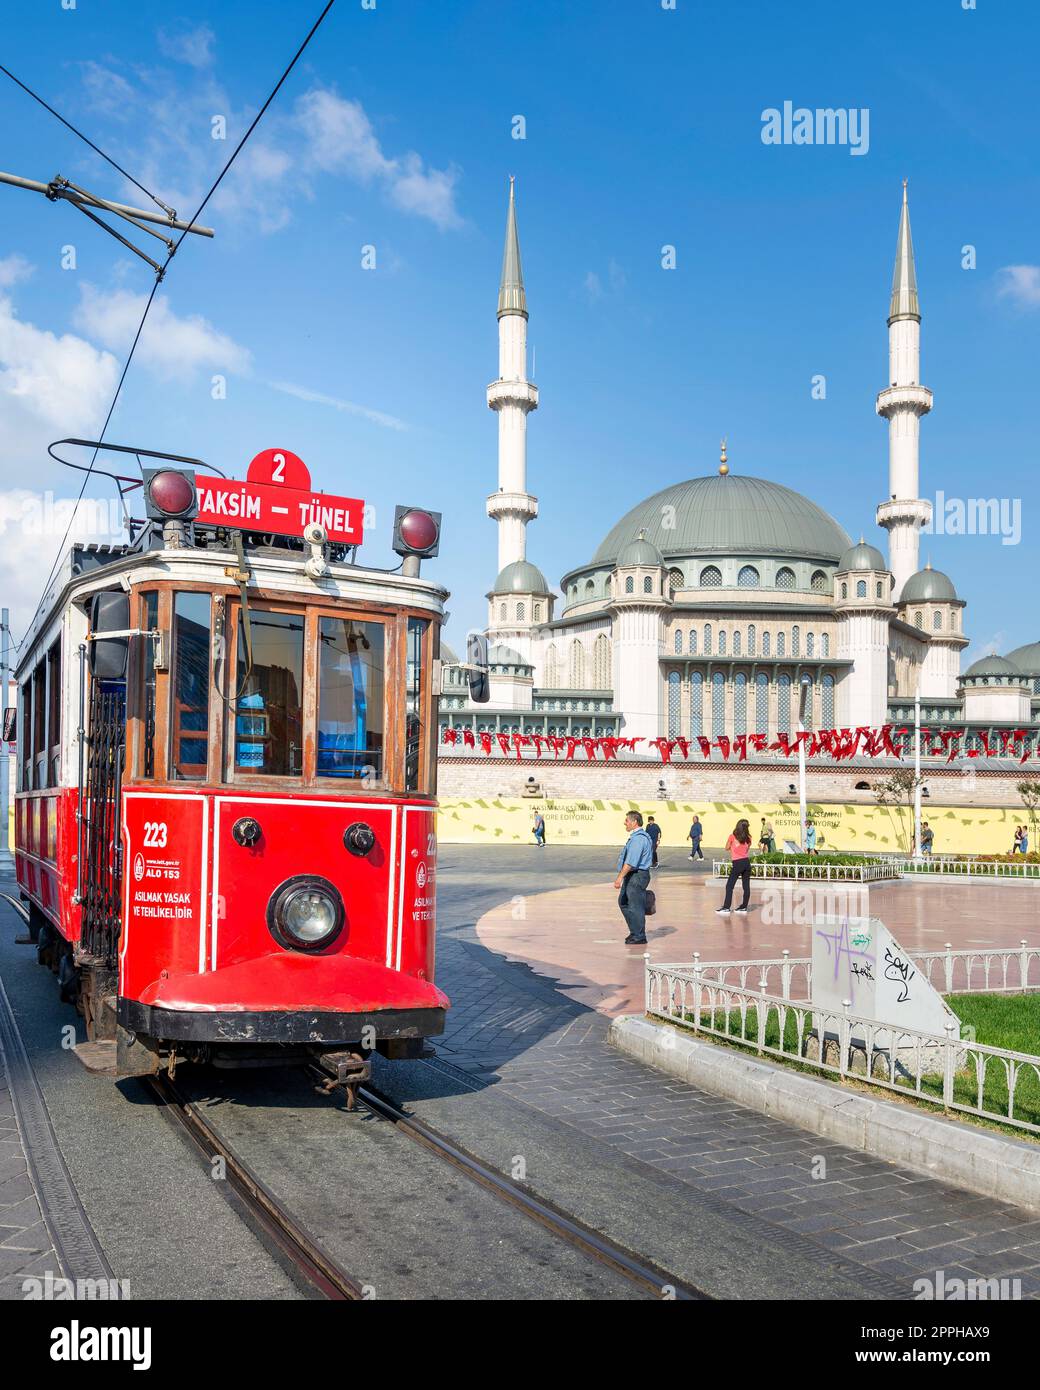 Nostalgische rote Straßenbahn Taksim Tunel, oder Tramvay, mit Taksim-Moschee im Hintergrund, am Taksim-Platz, Istanbul, Türkei Stockfoto